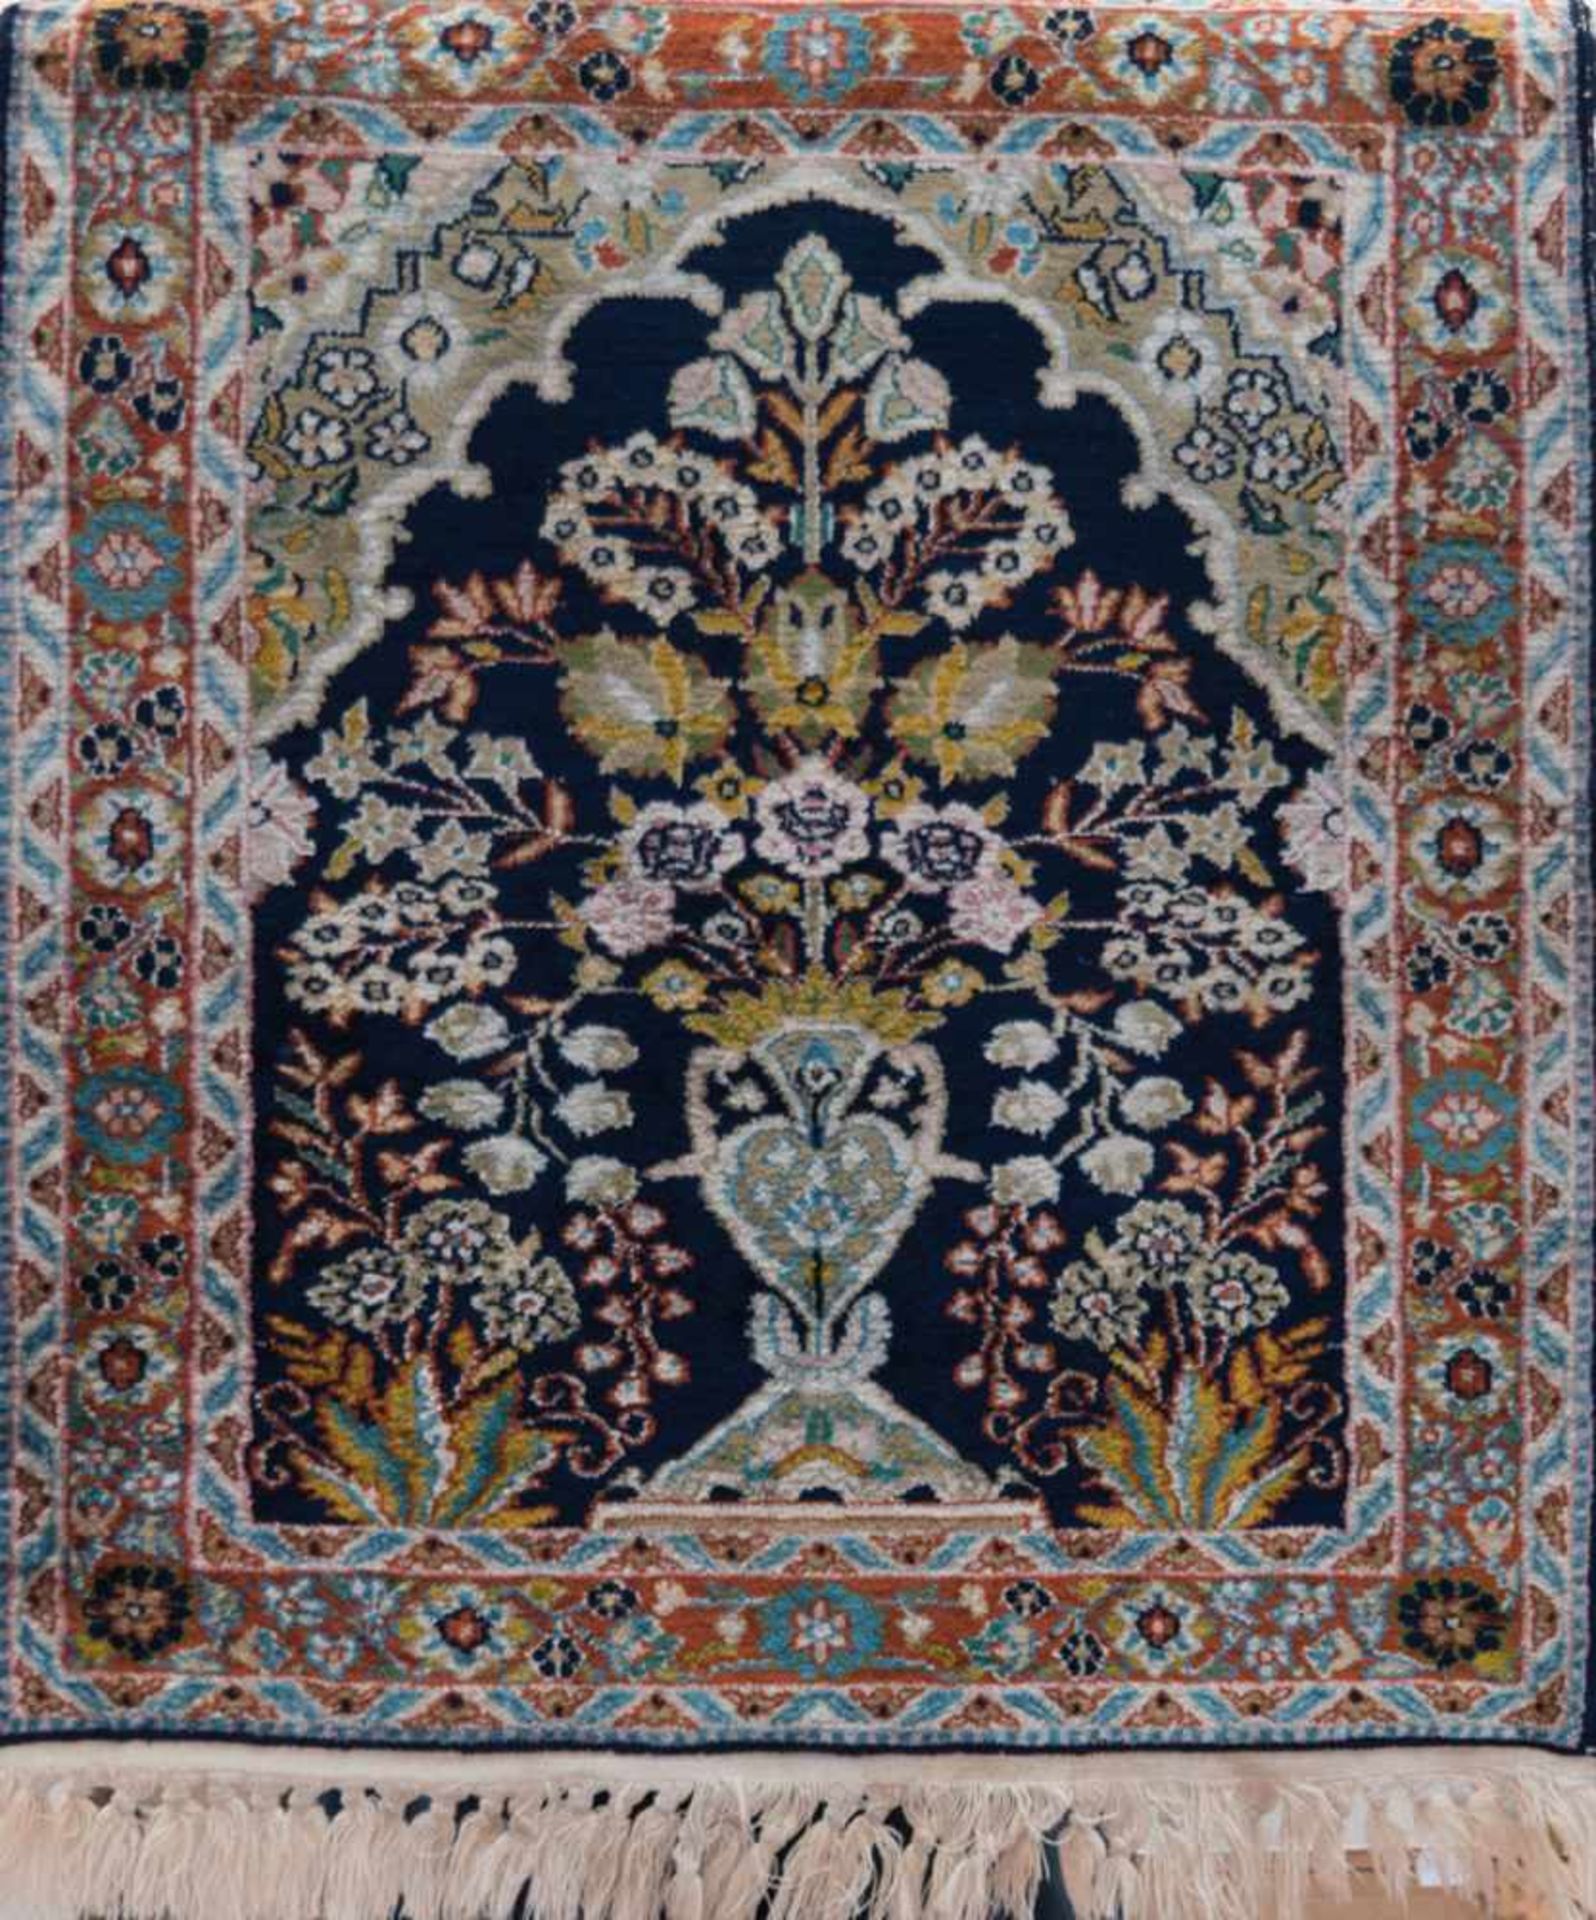 Teppich, Seide, dunkelgrundig mit bildlicher Darstellung, Vasen mit floralem Muster,Kanten sowie